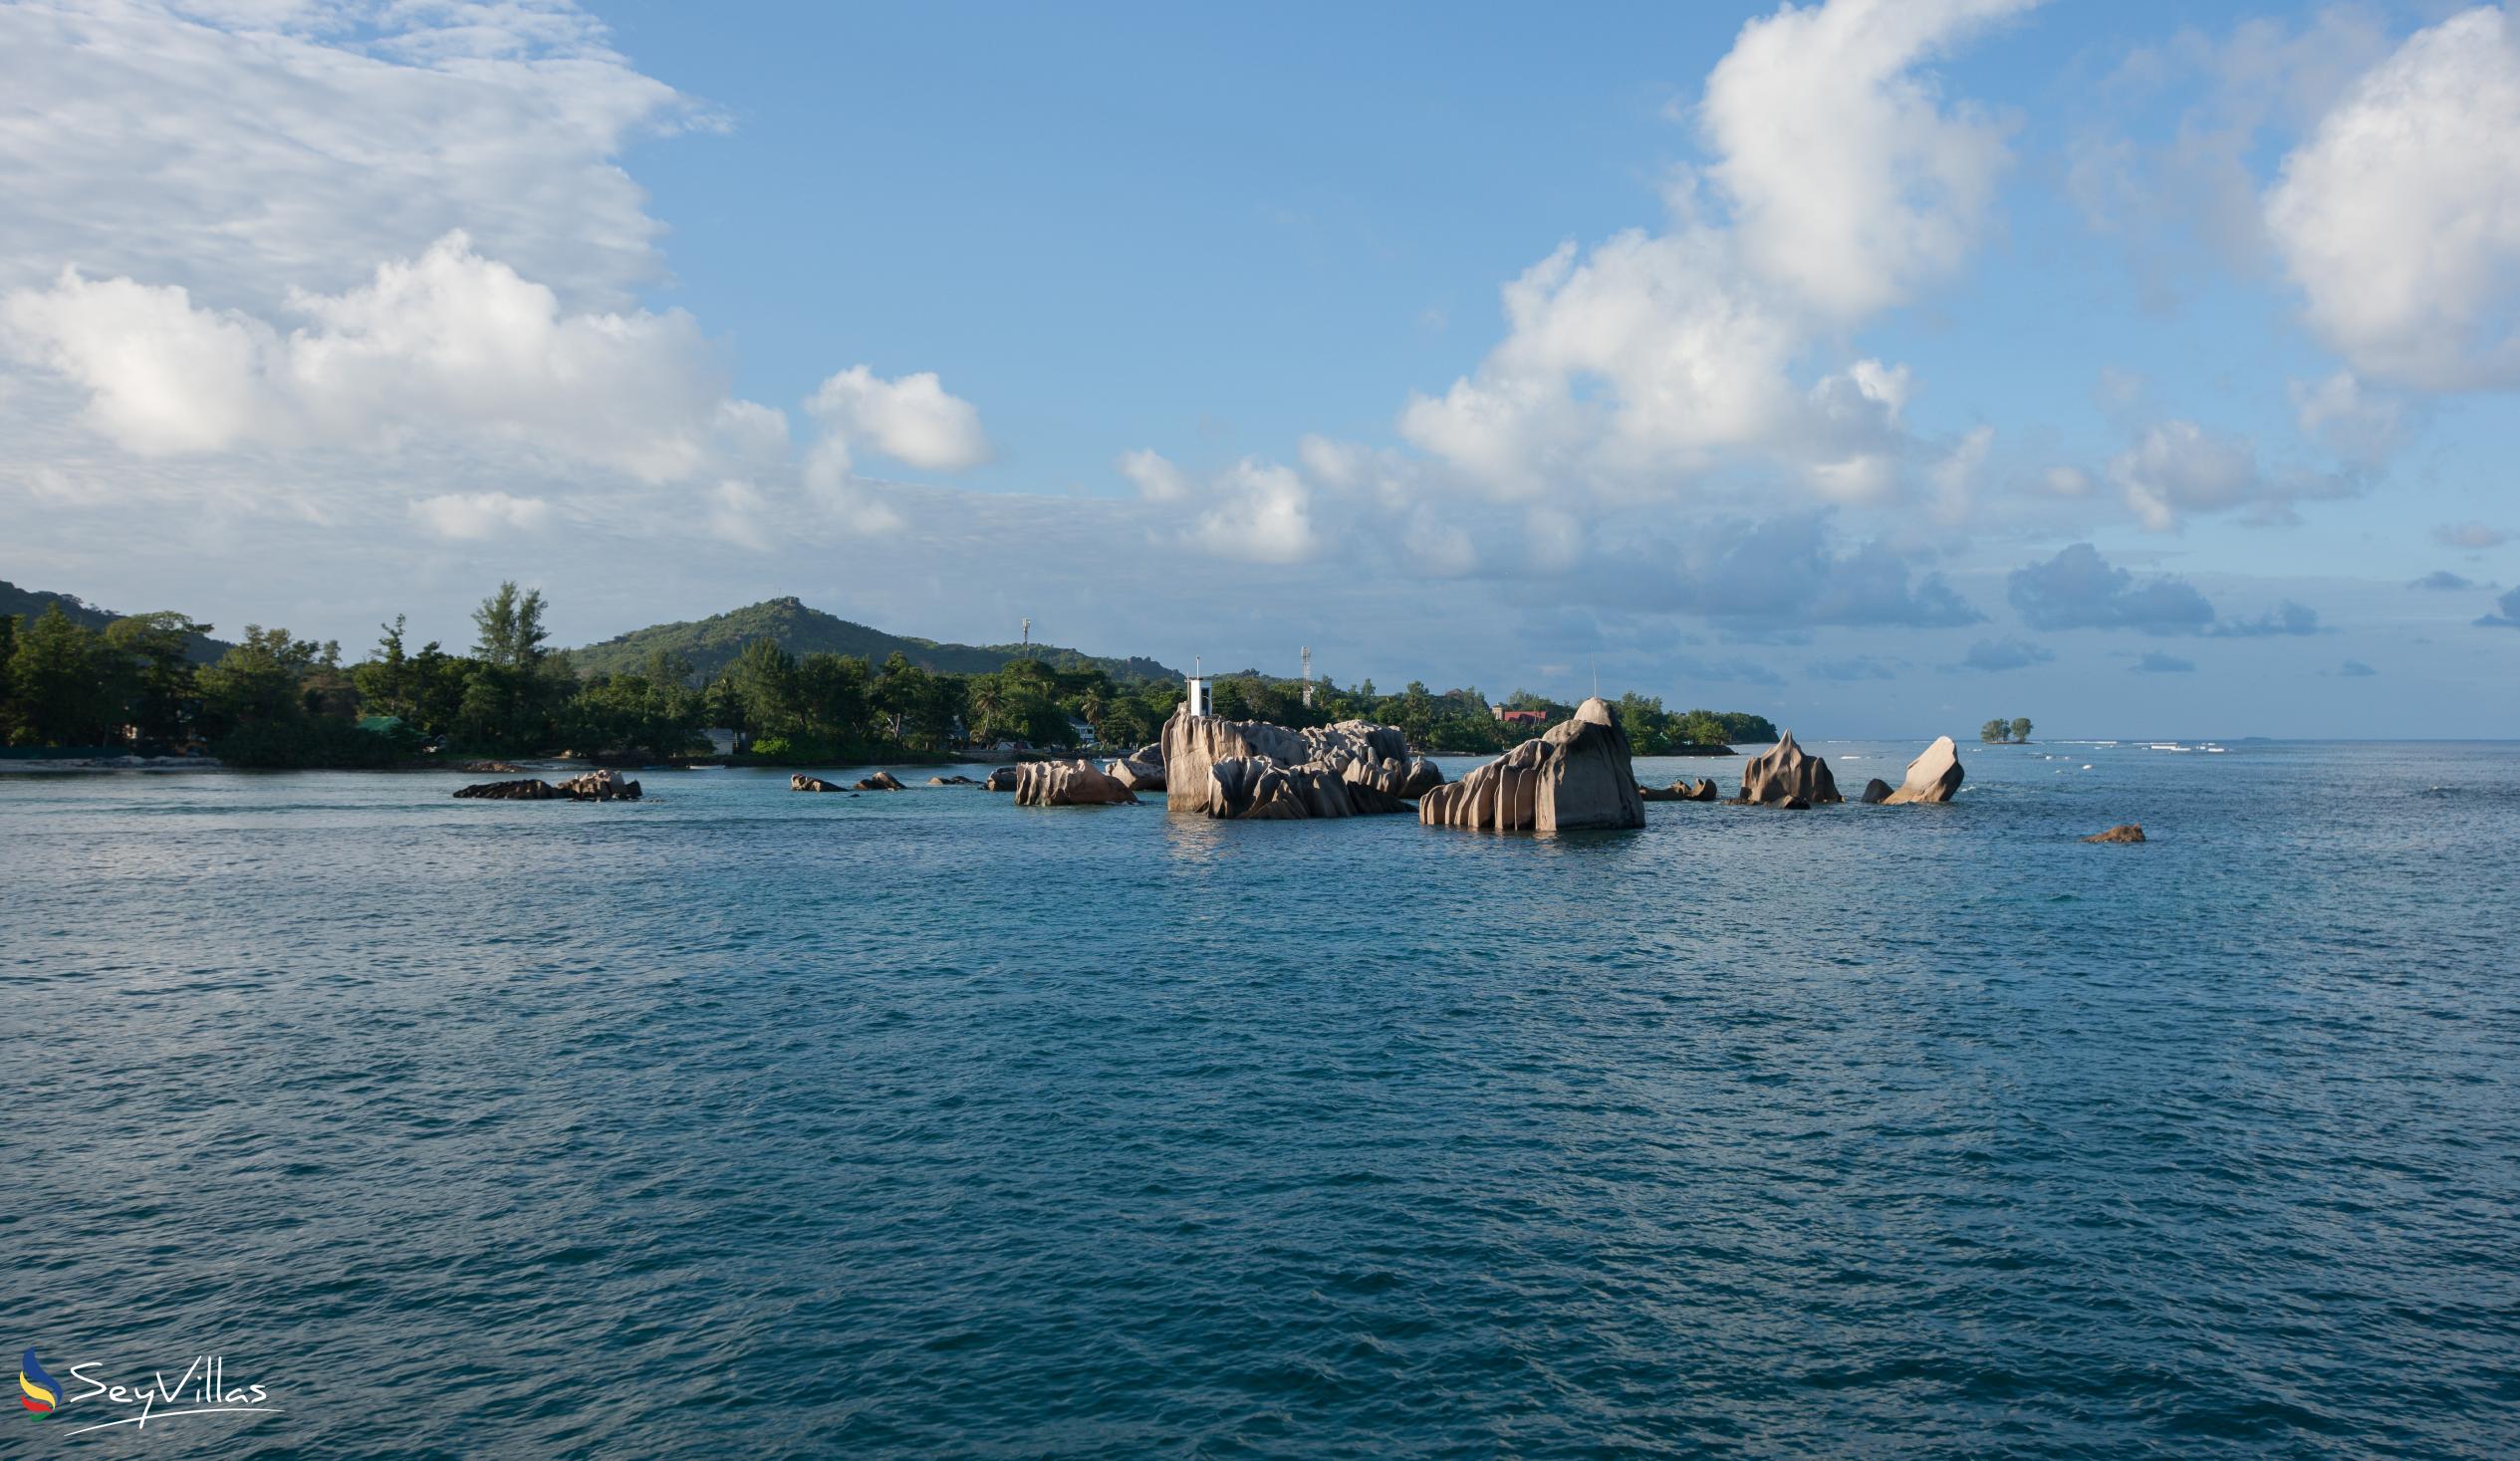 Foto 53: Tannette's Villa - Posizione - La Digue (Seychelles)